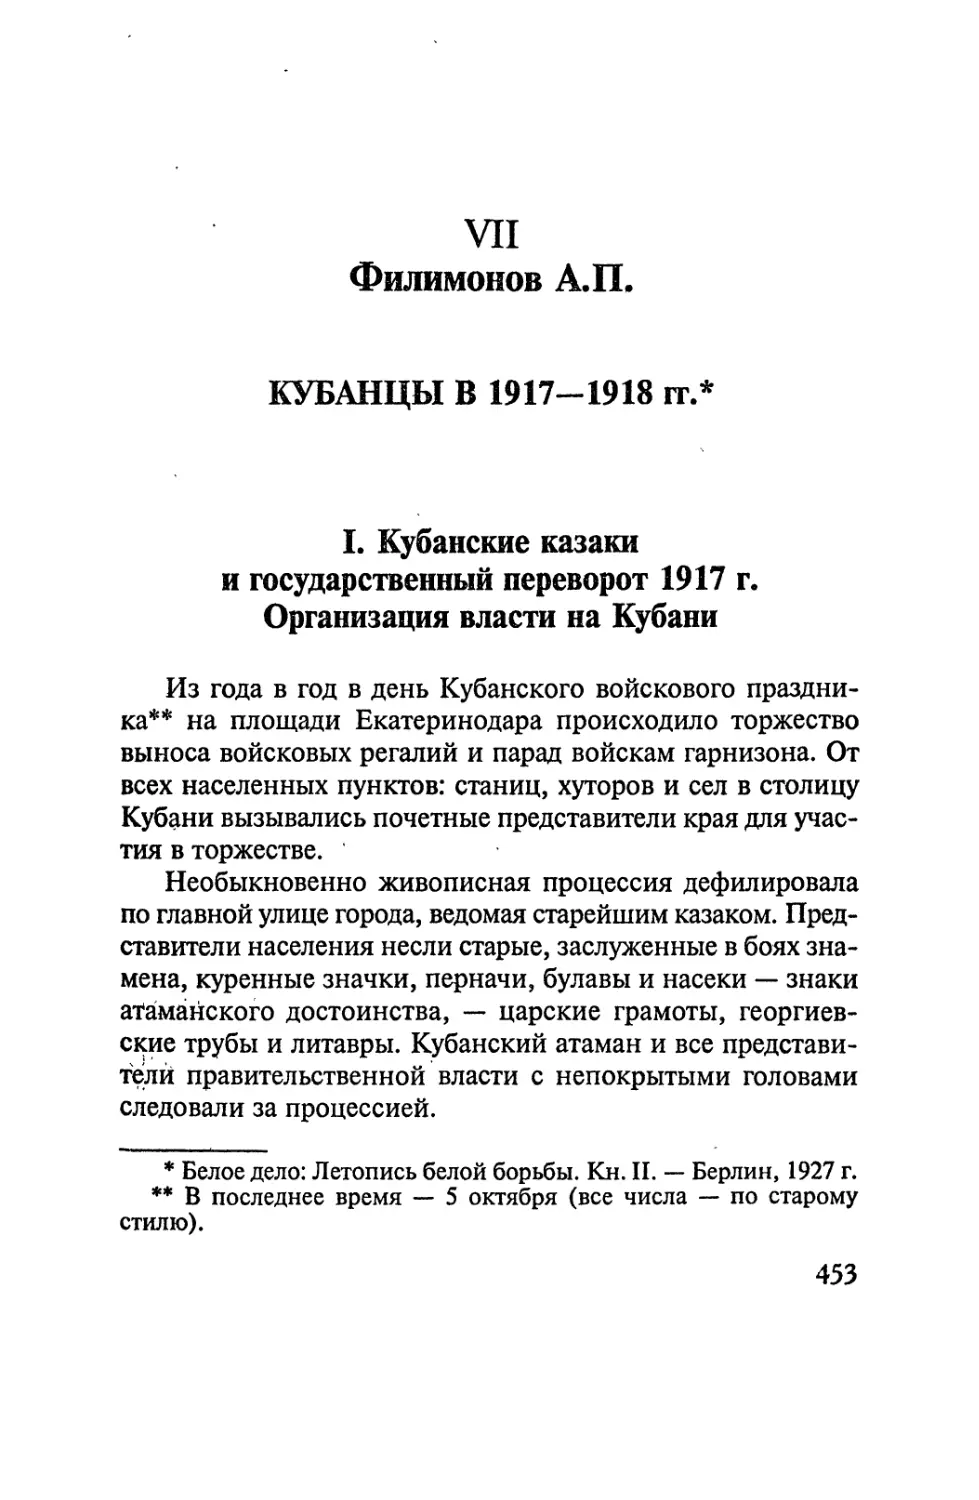 VII. Филимонов А.П. Кубанцы в 1917 - 1918 годах